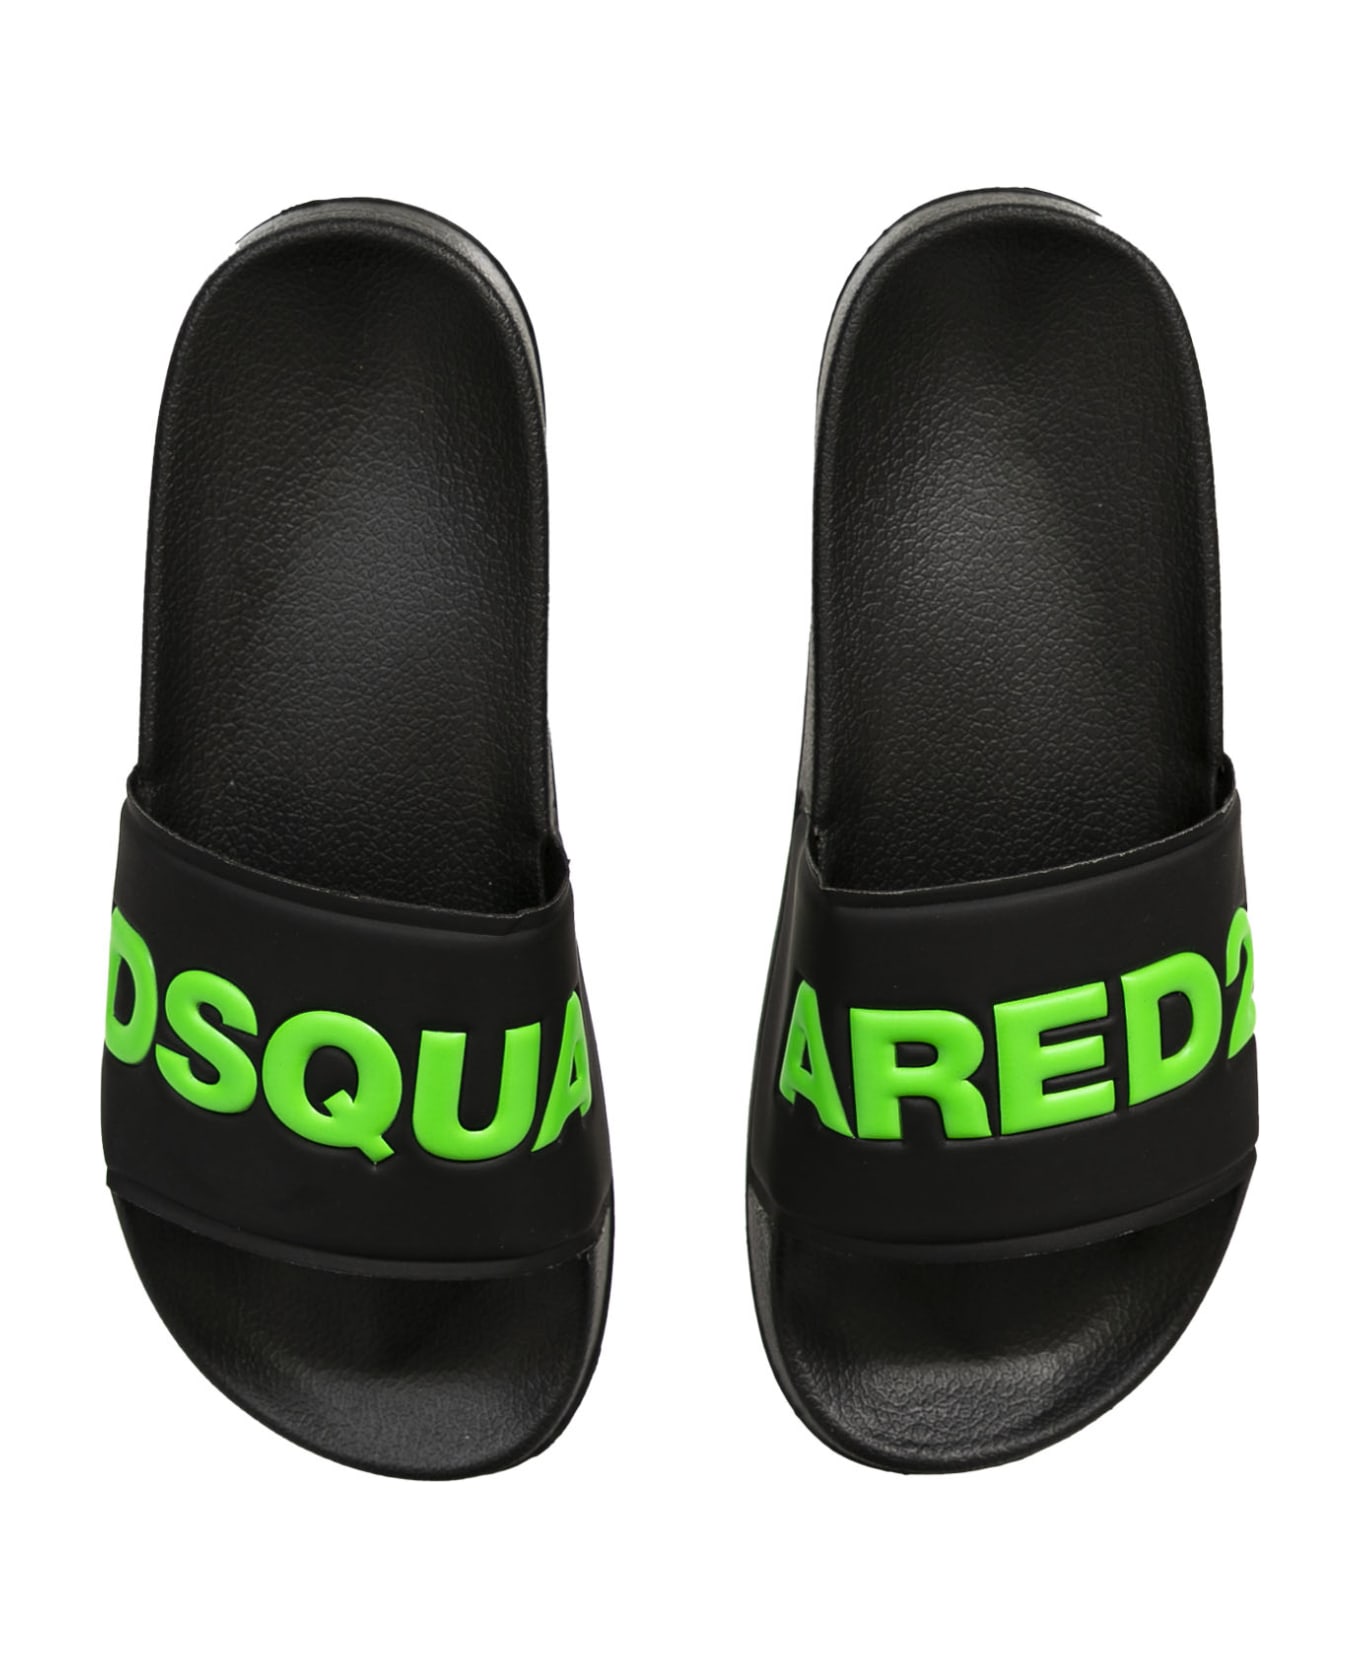 Dsquared2 Logo Printed Slide Sandals - Back シューズ